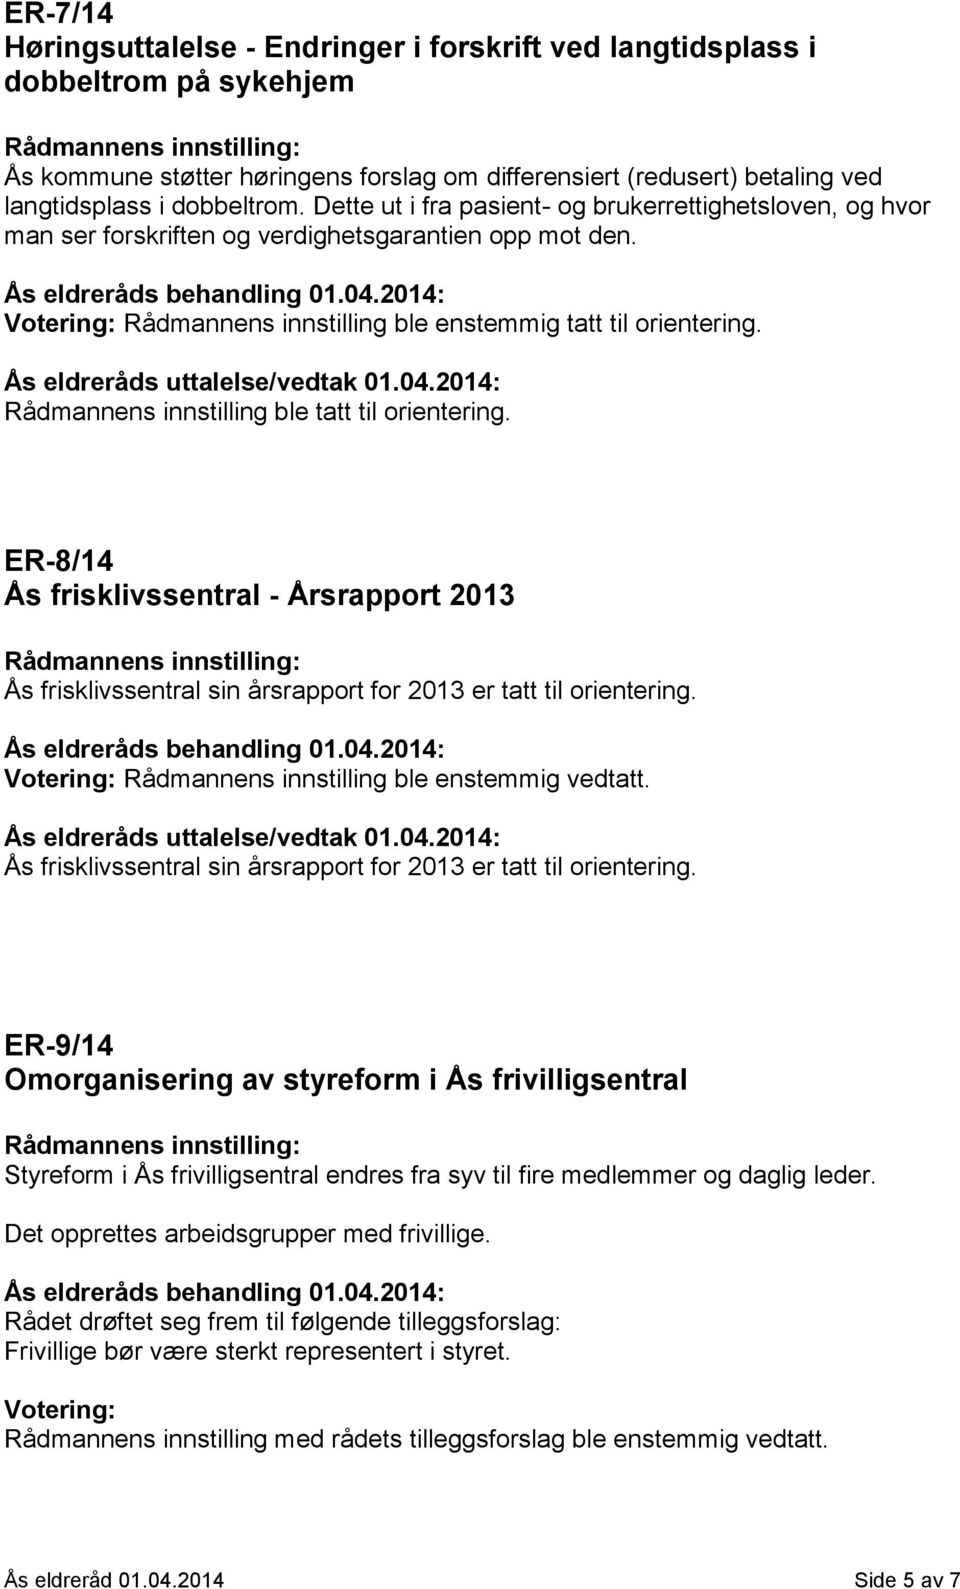 Ås eldreråds uttalelse/vedtak 01.04.2014: Rådmannens innstilling ble tatt til orientering.